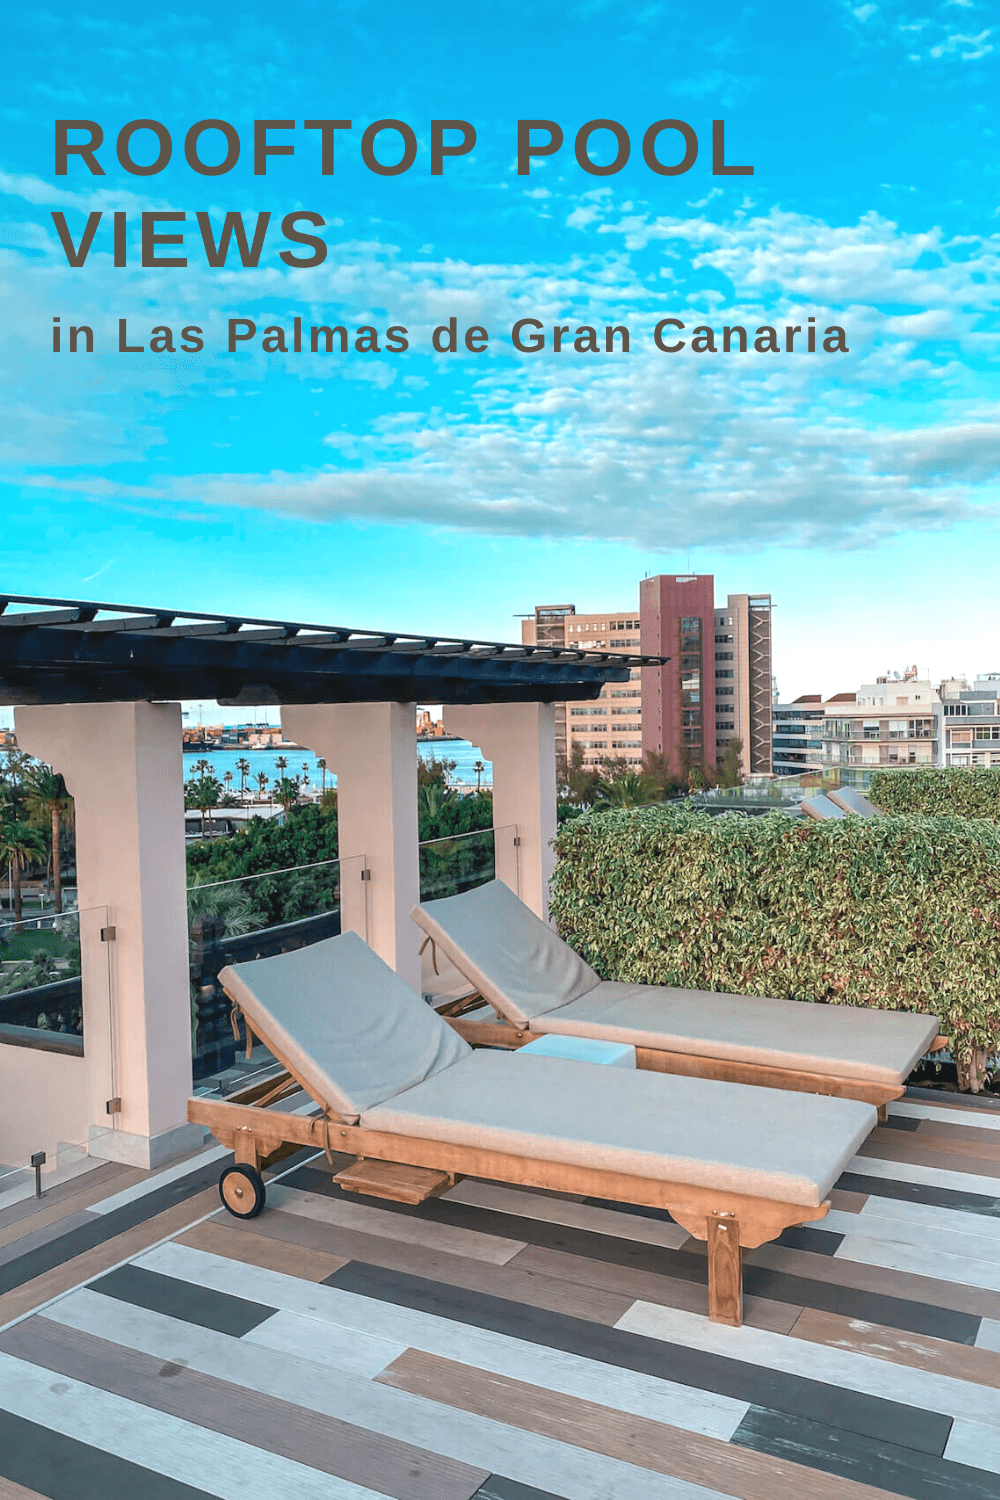 Rooftop pool views in Las Palmas